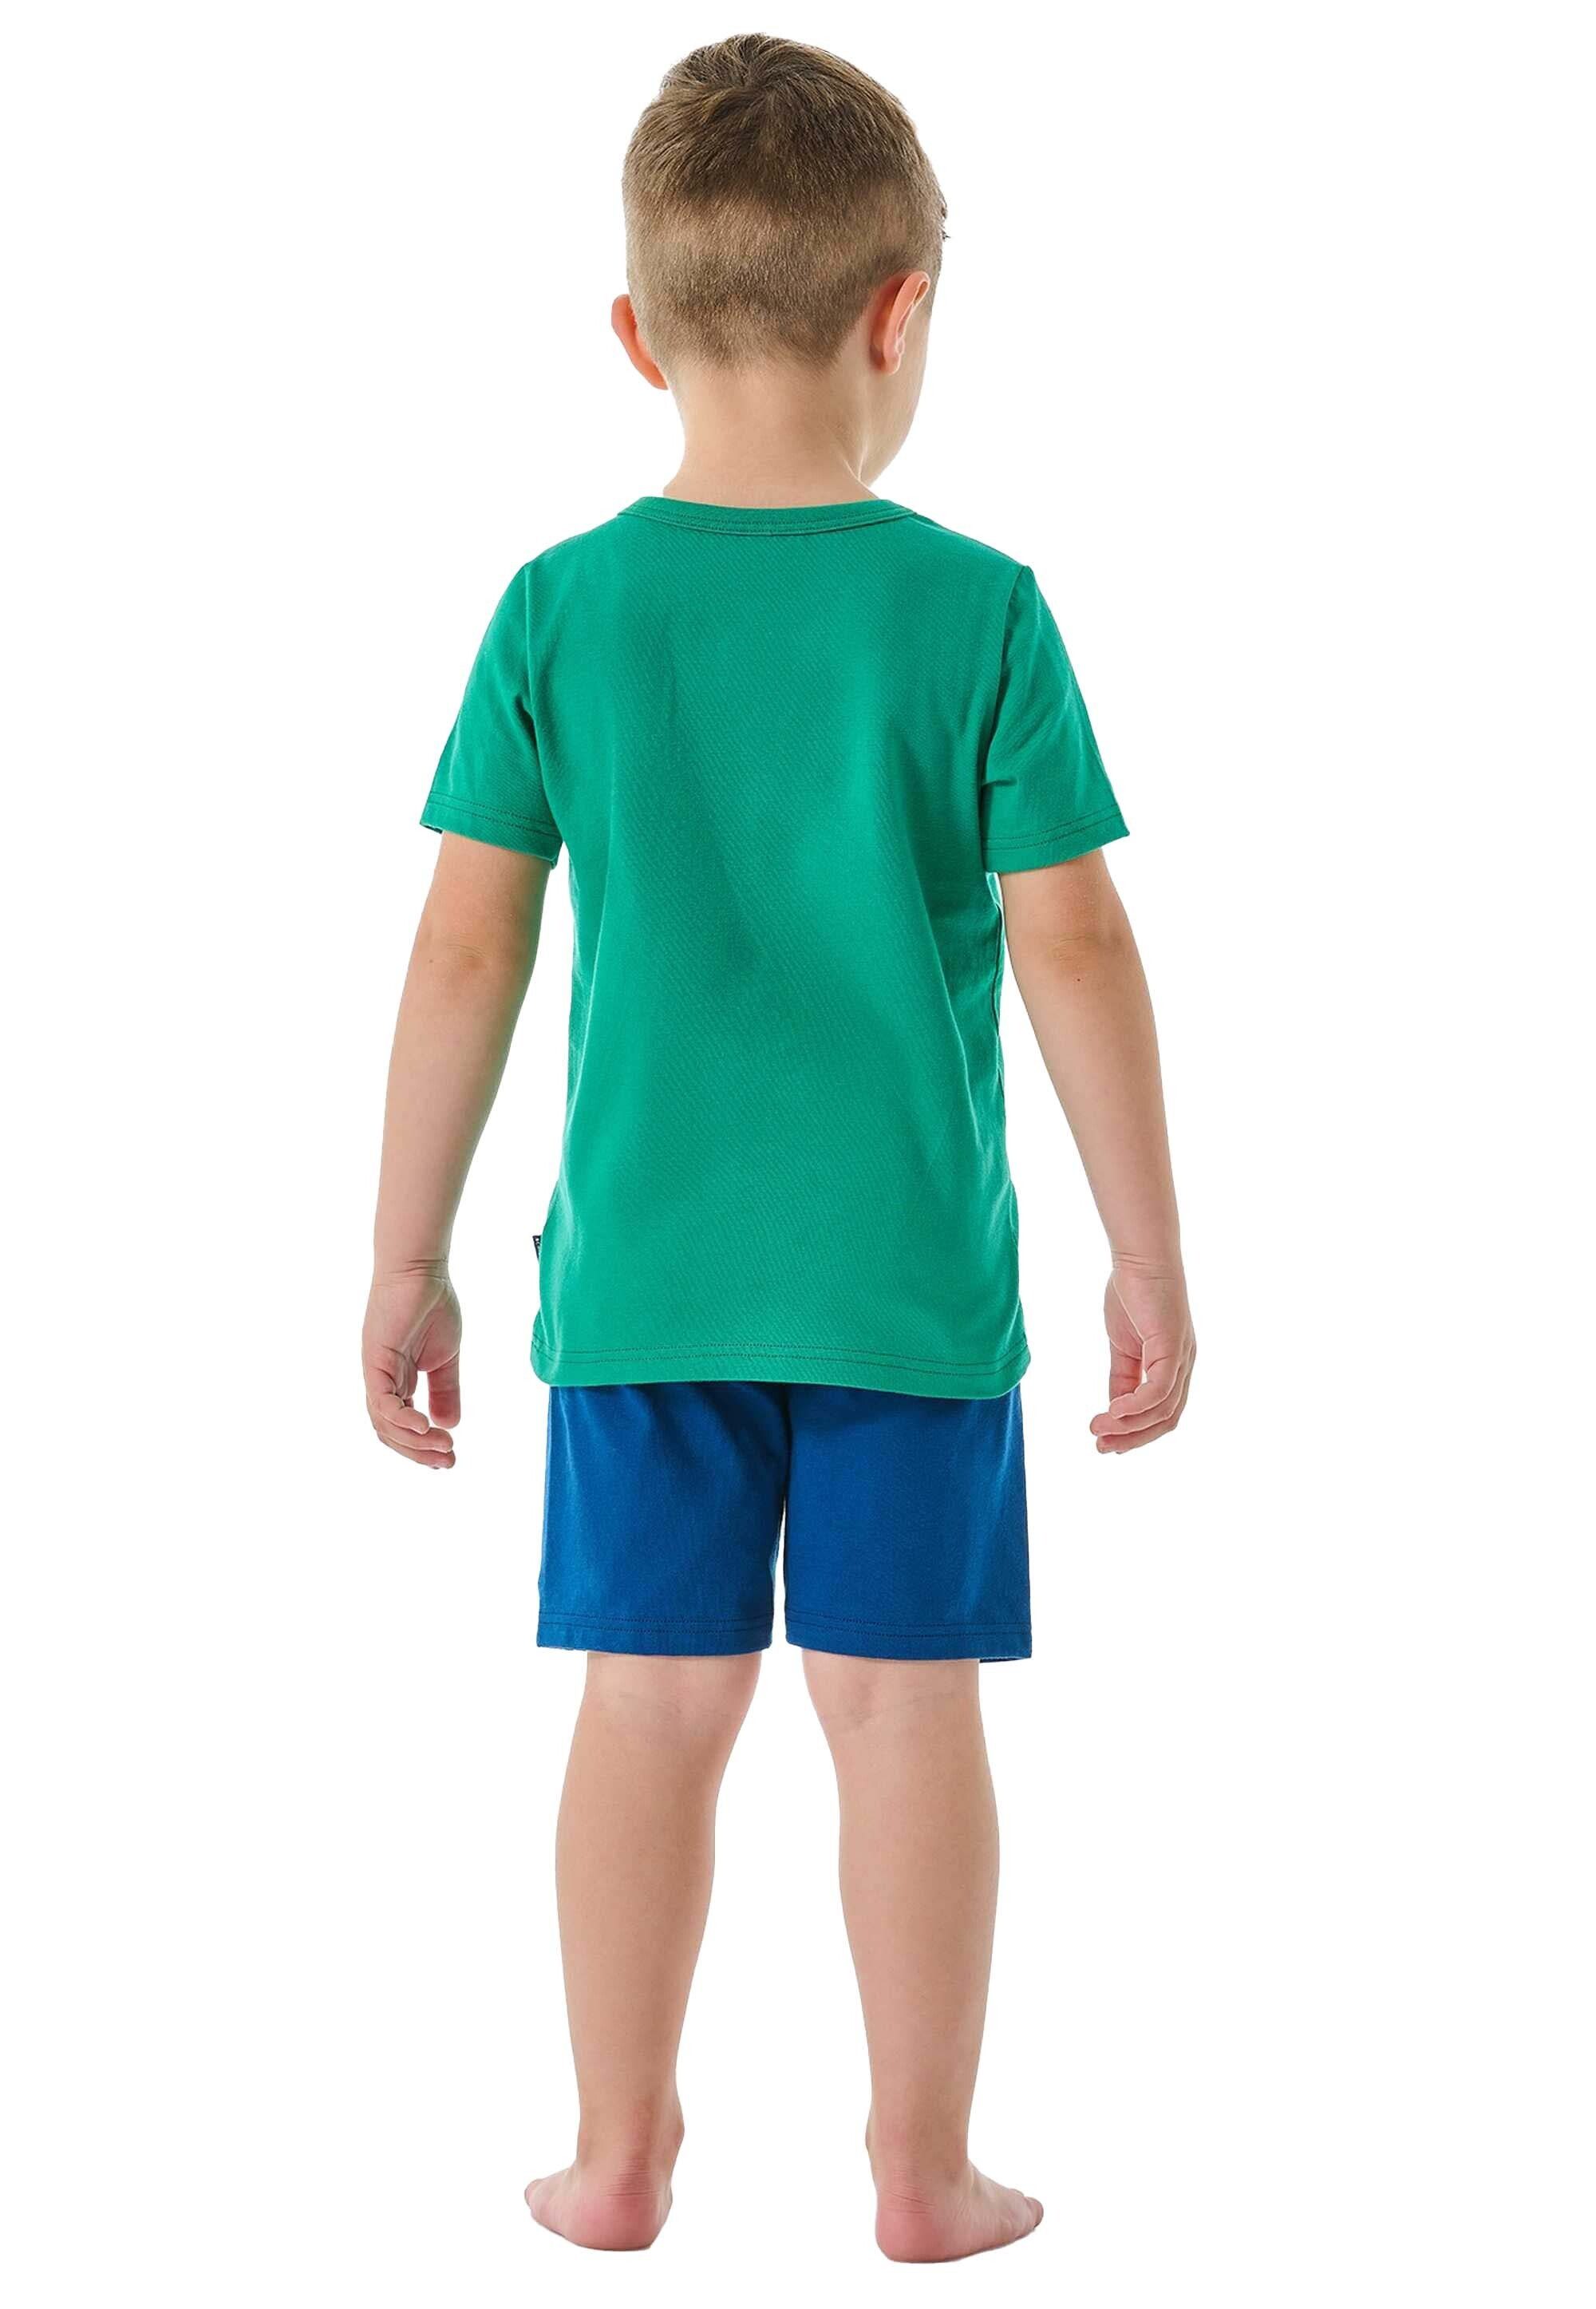 Schlafanzug Set Kinder kurz, - Jungen Grün/Blau 2-tlg. Schiesser Pyjama